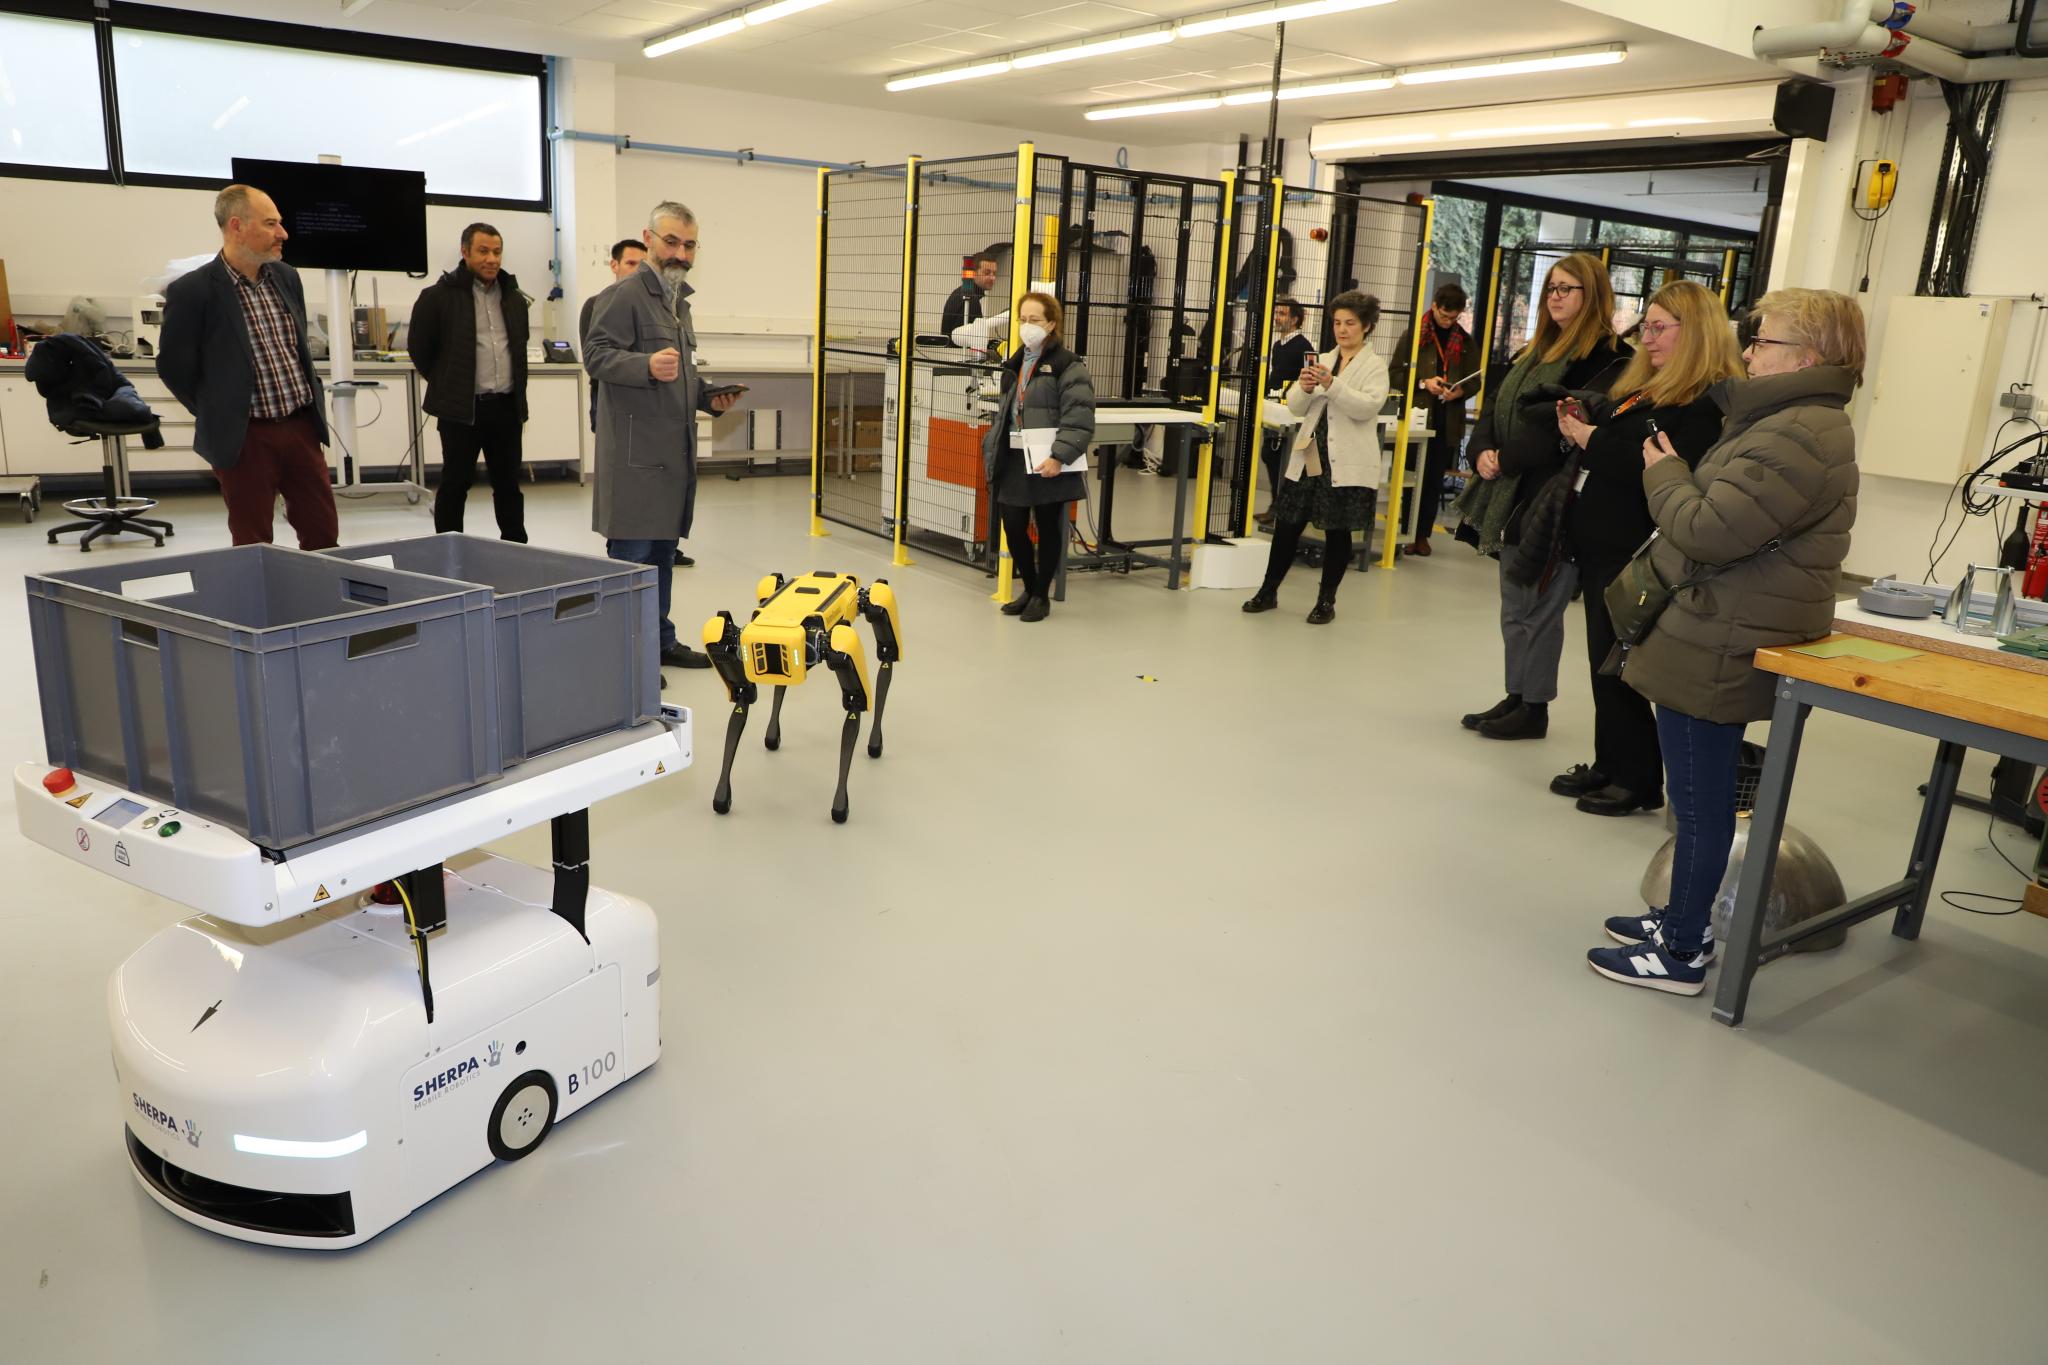 Les équipes de l'INRS font la démonstration du robot Spot conçu par Boston Dynamics aux membres du Conseil et aux équipes d'Inria.